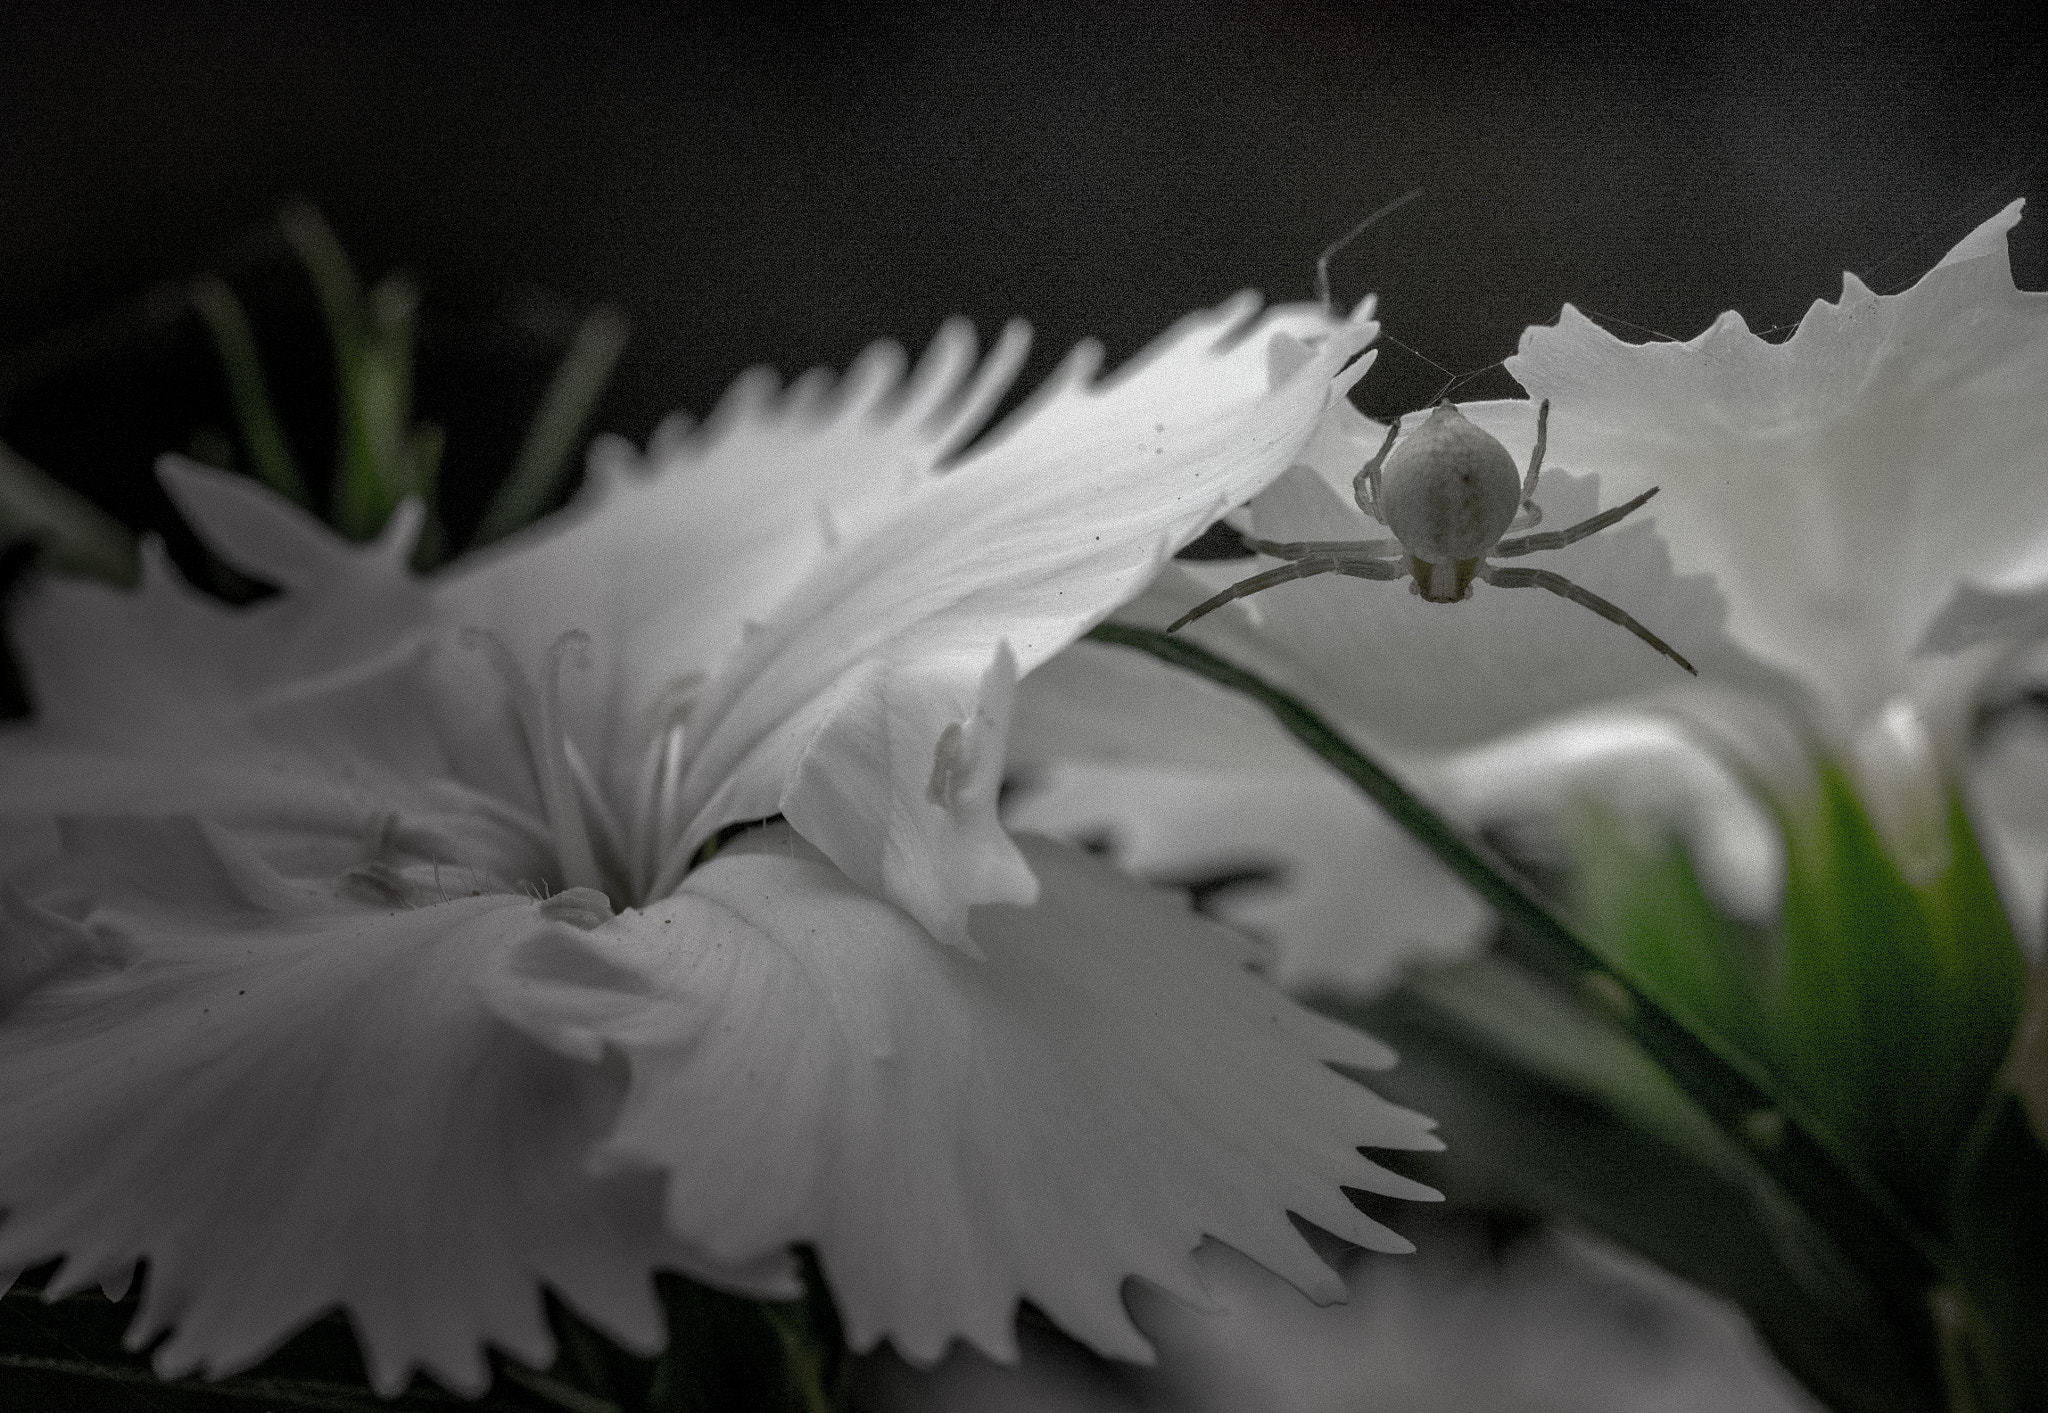 Panasonic Lumix DMC-GM1 + Olympus M.Zuiko Digital ED 60mm F2.8 Macro sample photo. White flower, white spider photography